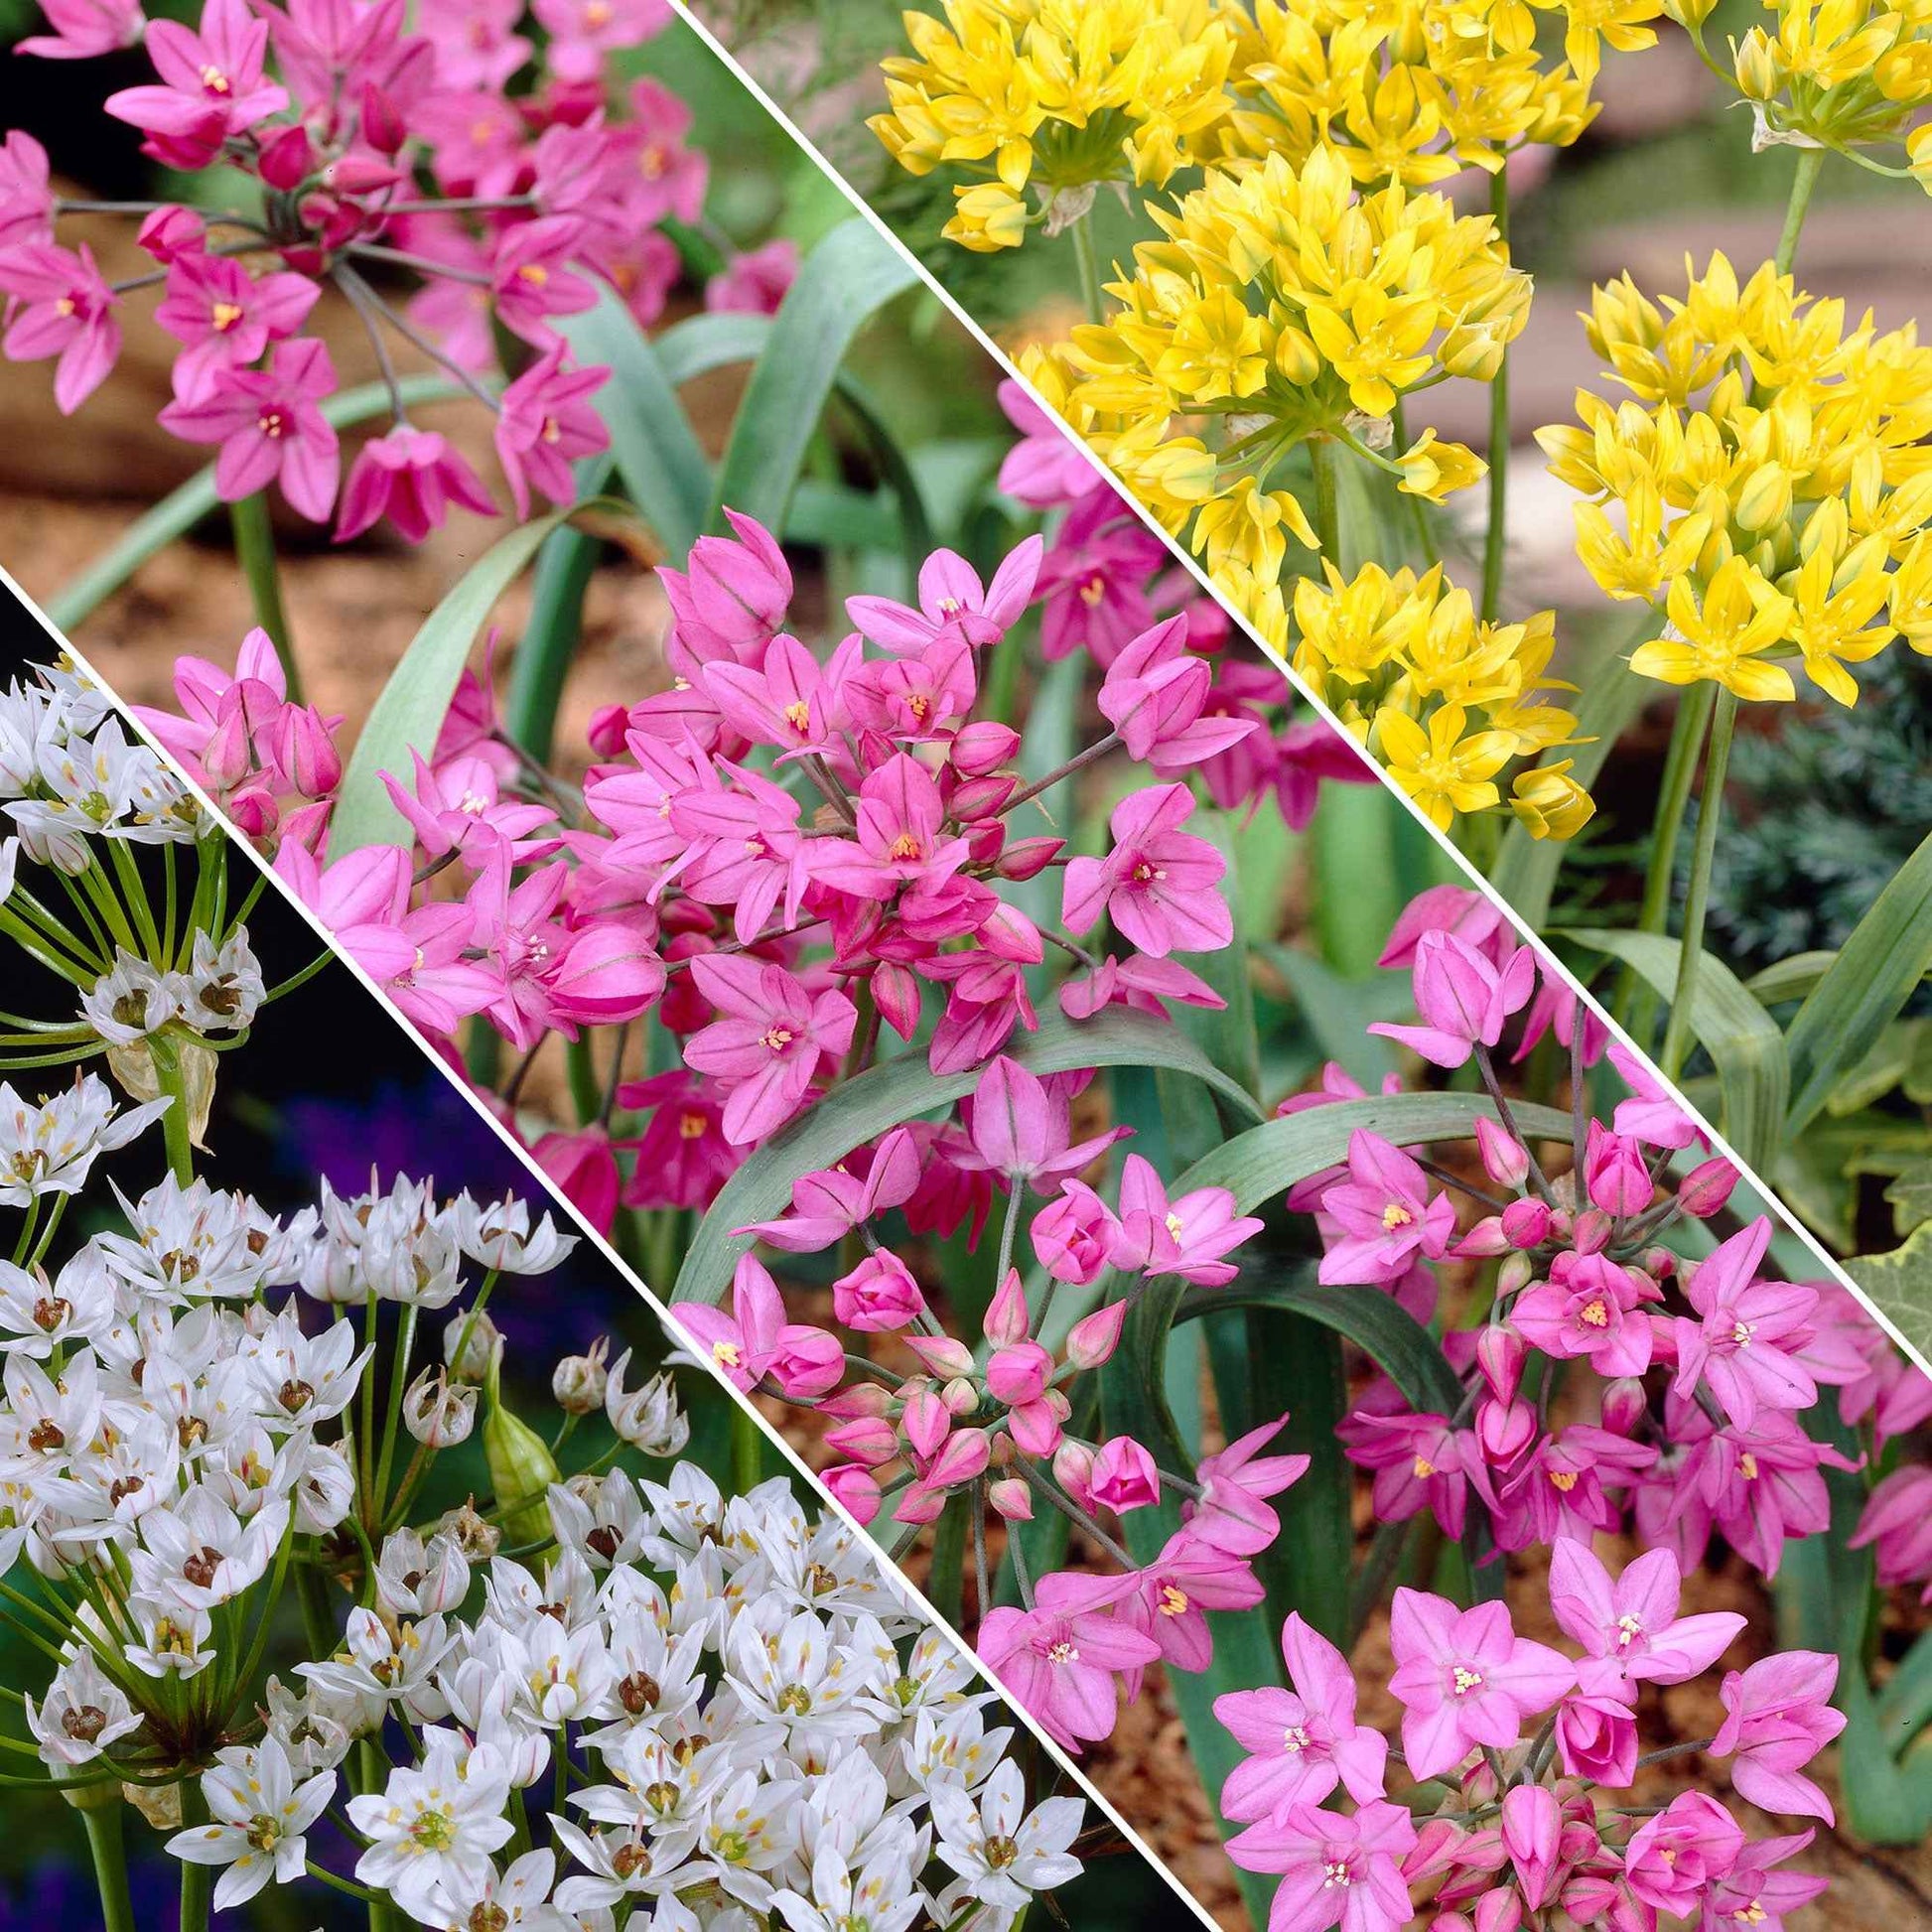 200x Zierzwiebel Allium - Mischung 'Butterfly' gelb-weiβ-rosa Gelb-Weiß-Rosa - Alle Blumenzwiebeln